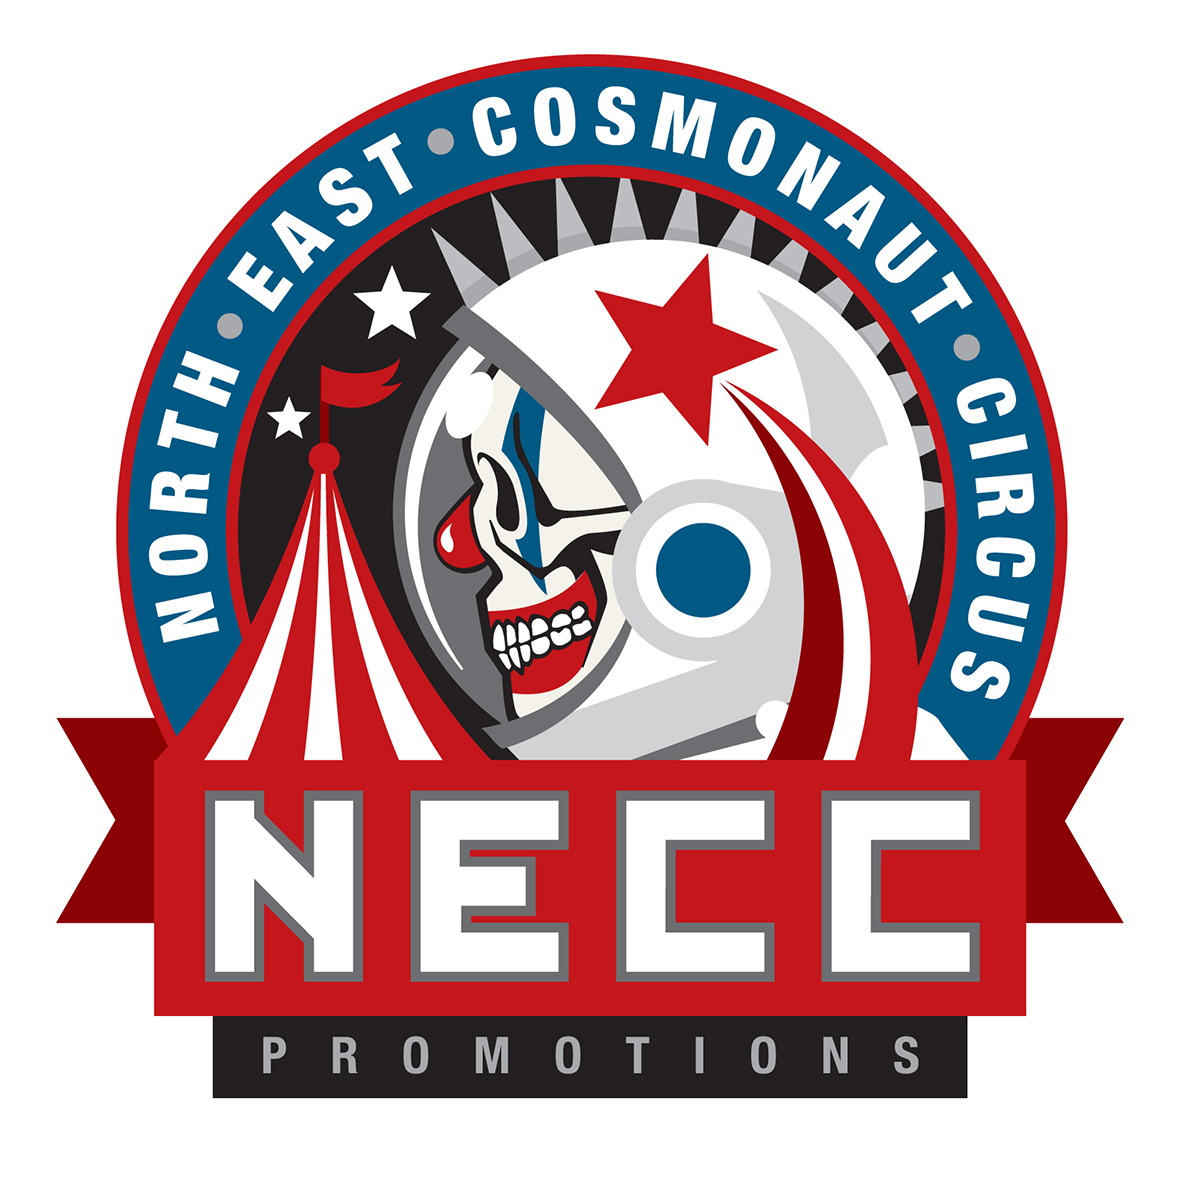 Logo design for NECC (North East Cosmonaut Circus) Promotions